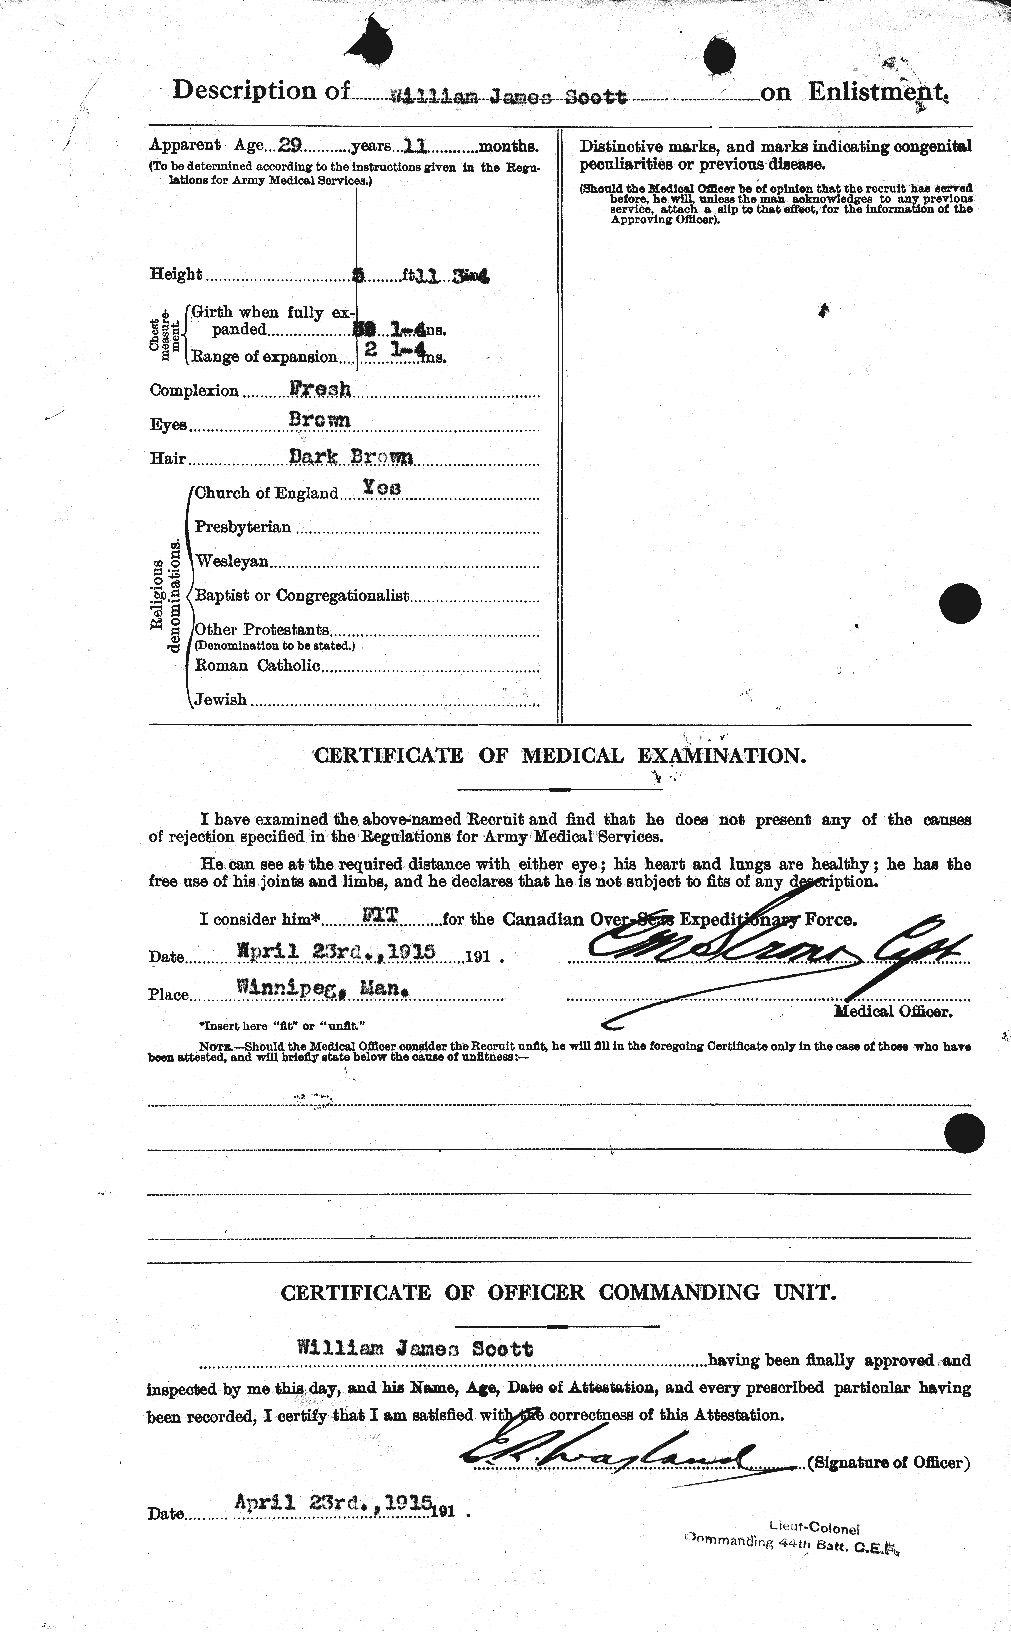 Dossiers du Personnel de la Première Guerre mondiale - CEC 086770b